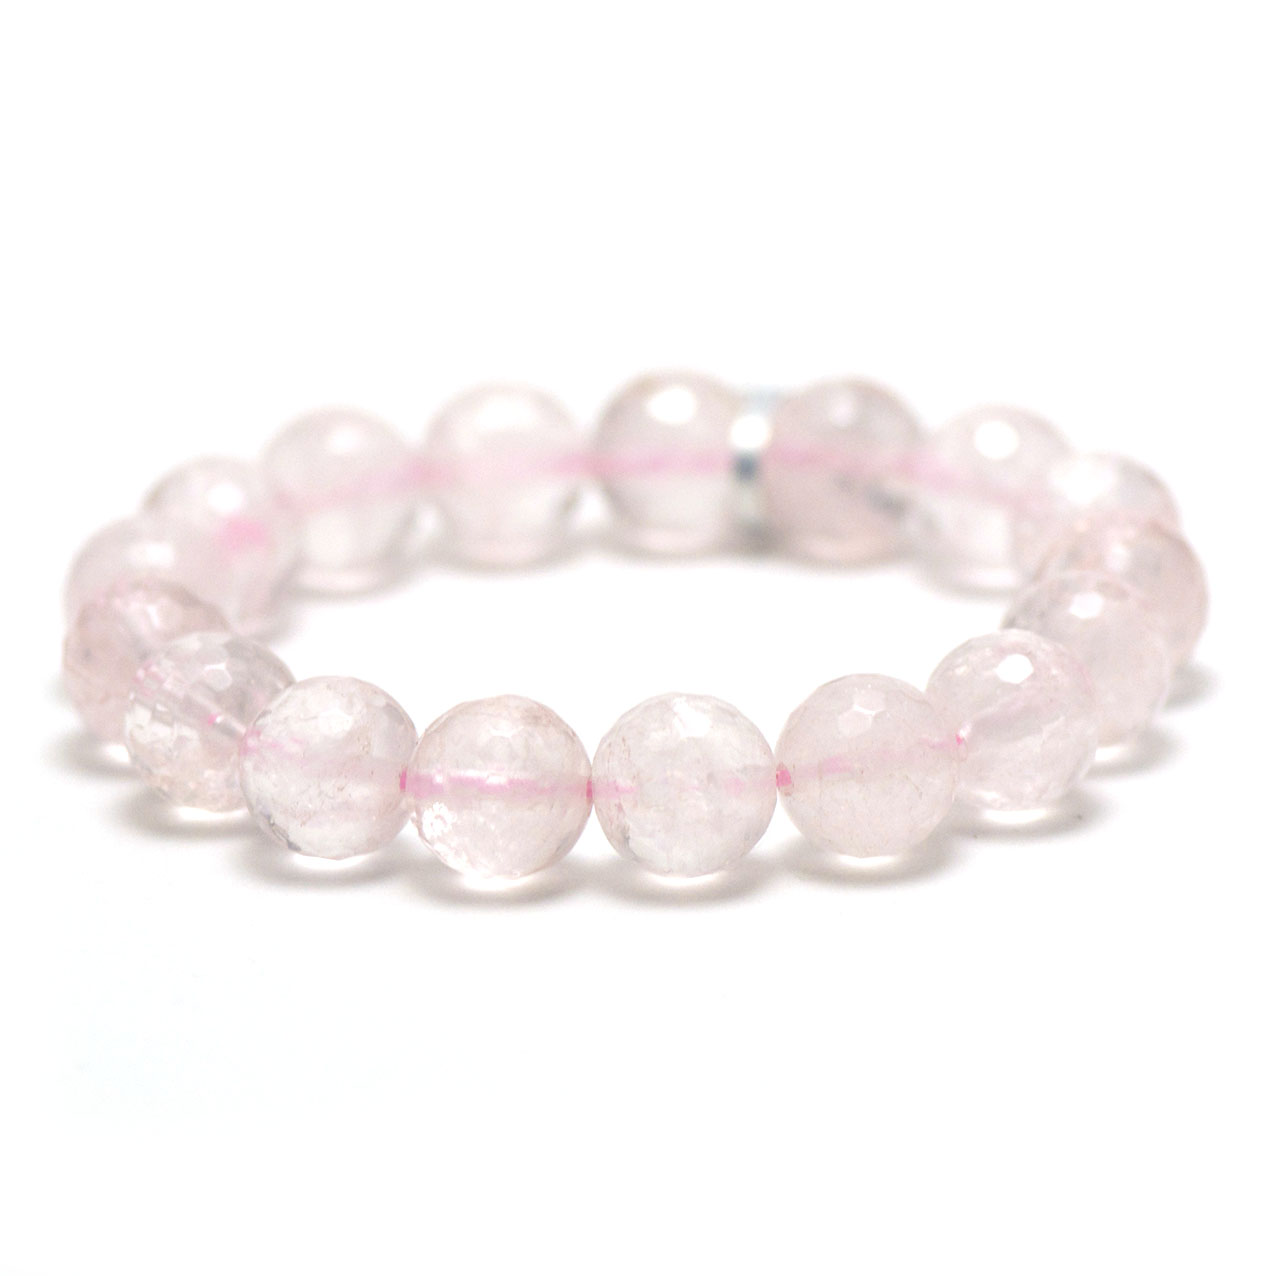 F ronde 12 mm 1 bracelet pierre naturelle quartz rose